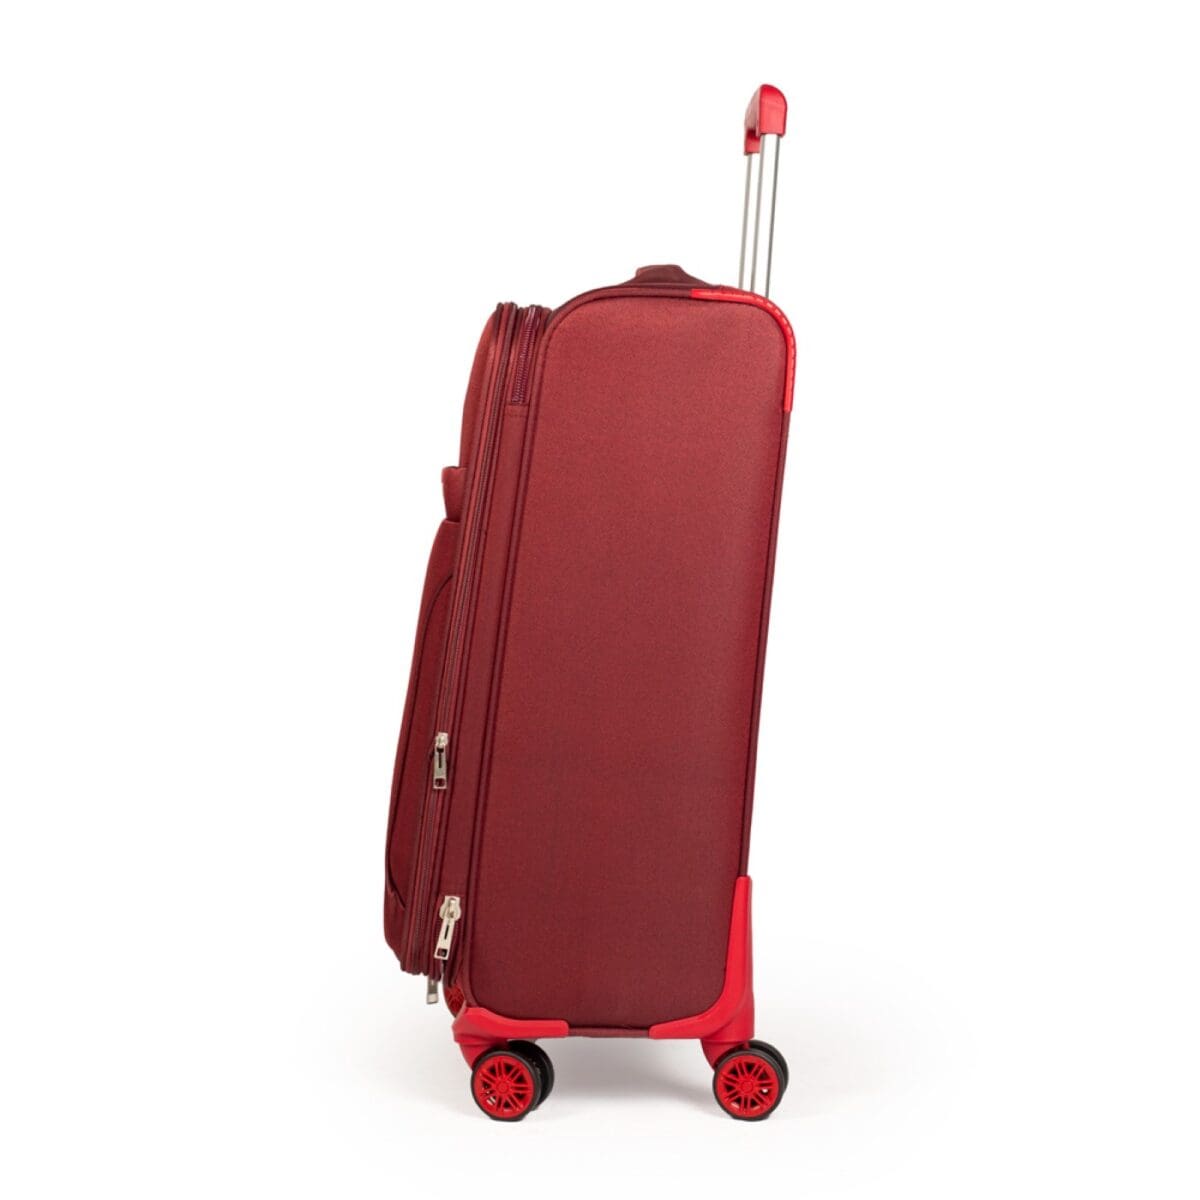 Αριστερή πλευρά βαλίτσας υφασμάτινης σε μπόρντο χρώμα